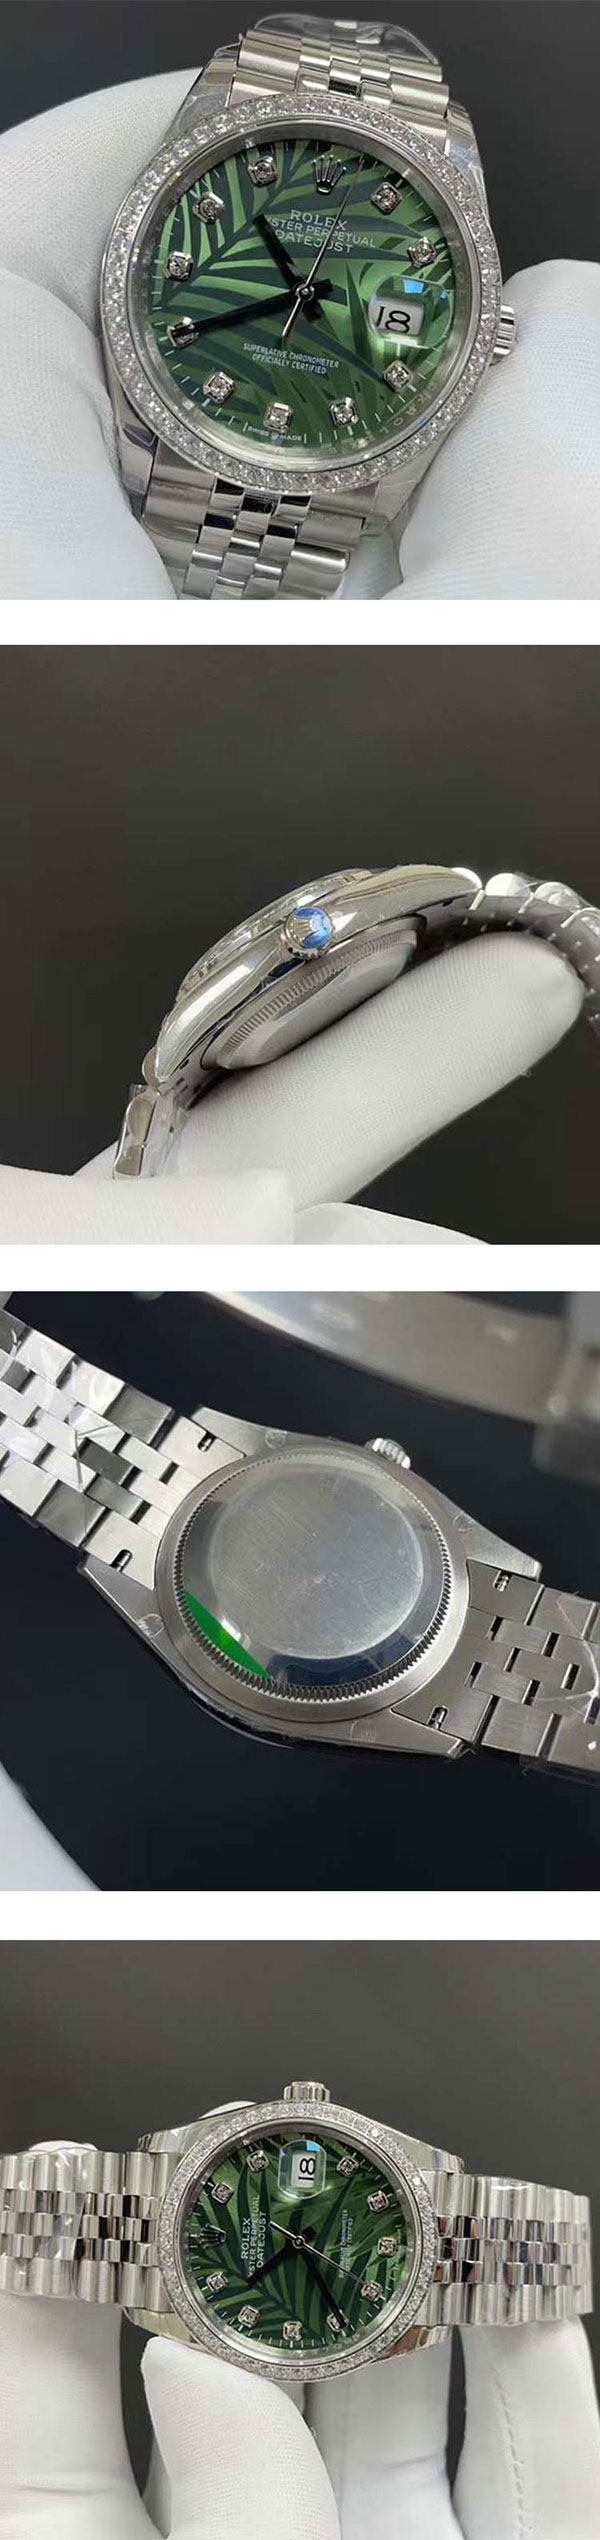 おしゃれ腕時計 ロレックスコピーM126284RBR-0047 デイトジャスト 36mm オリーブグリーン パーム 